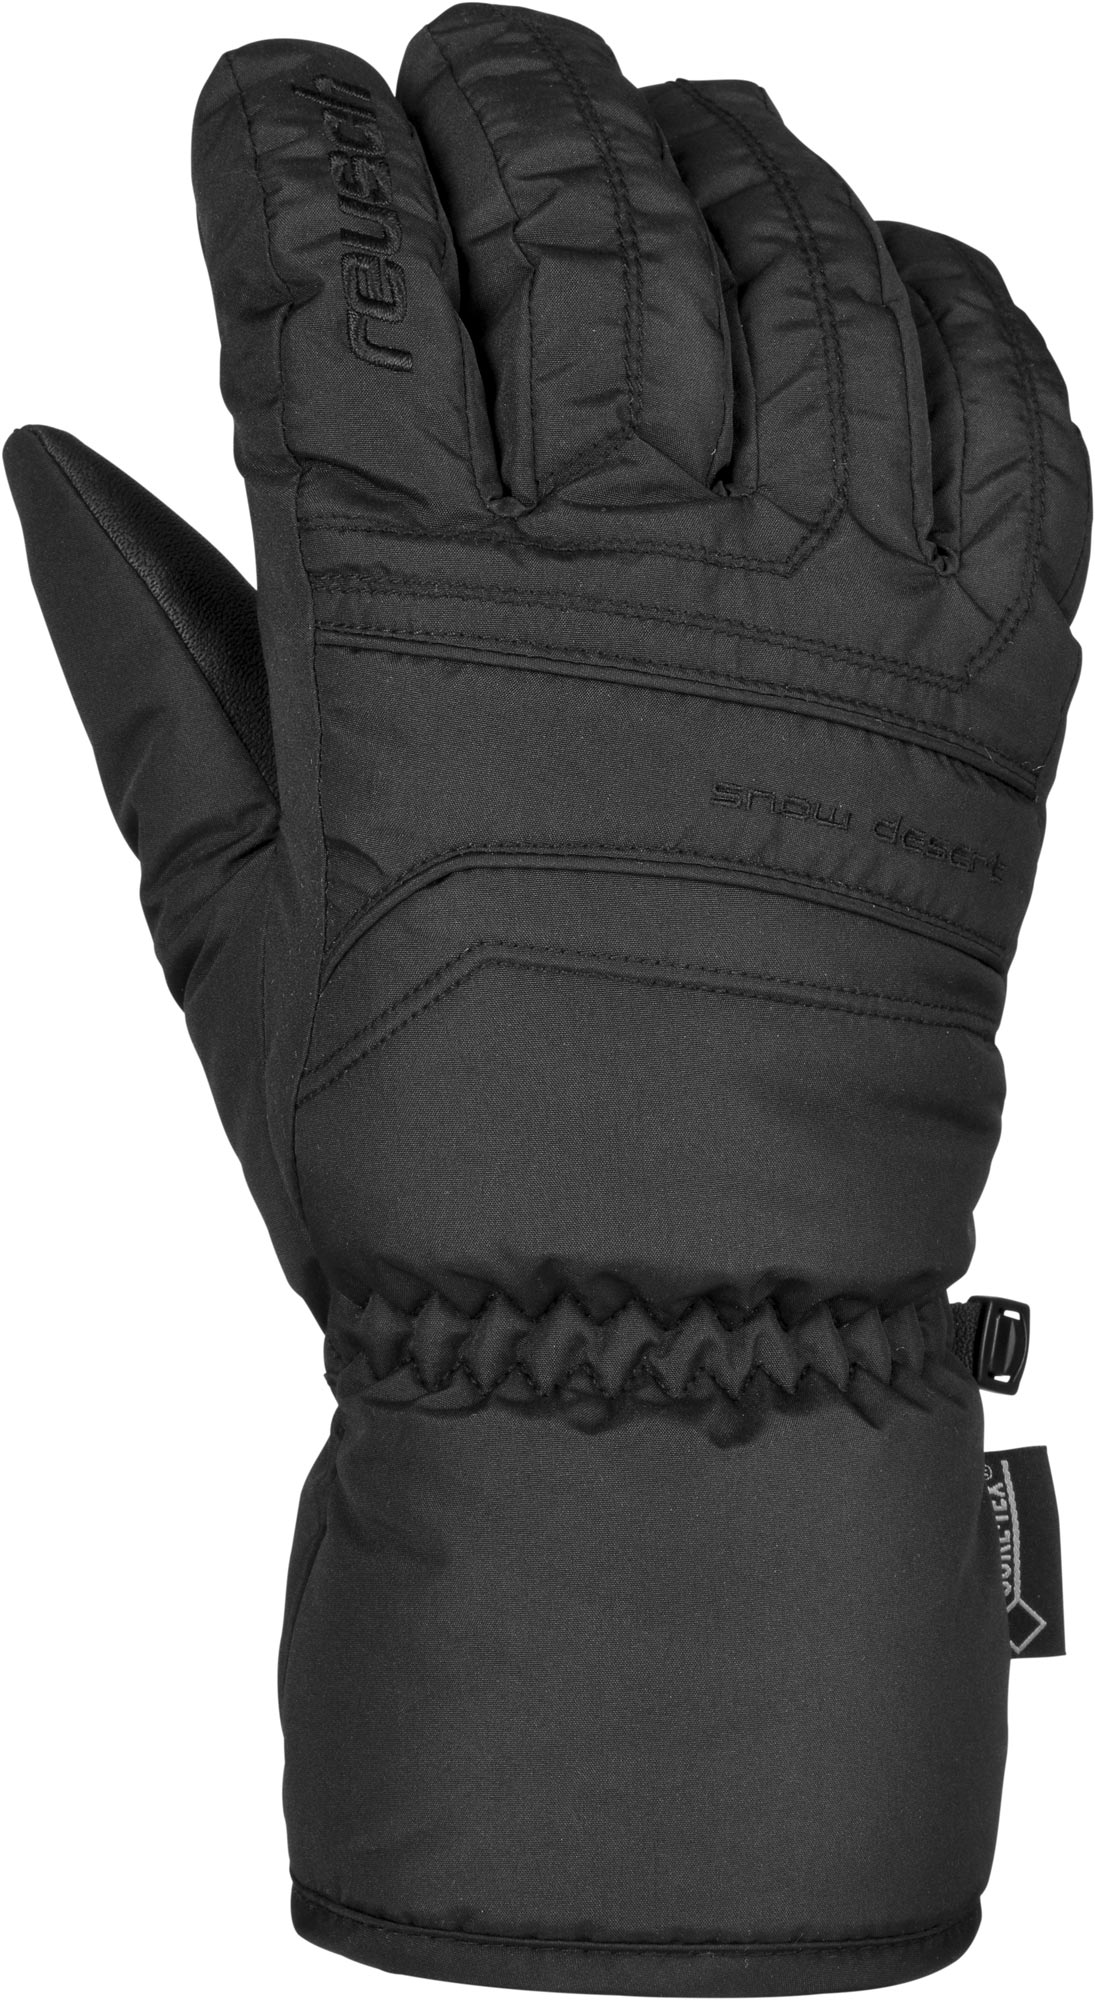 Unisex winter gloves